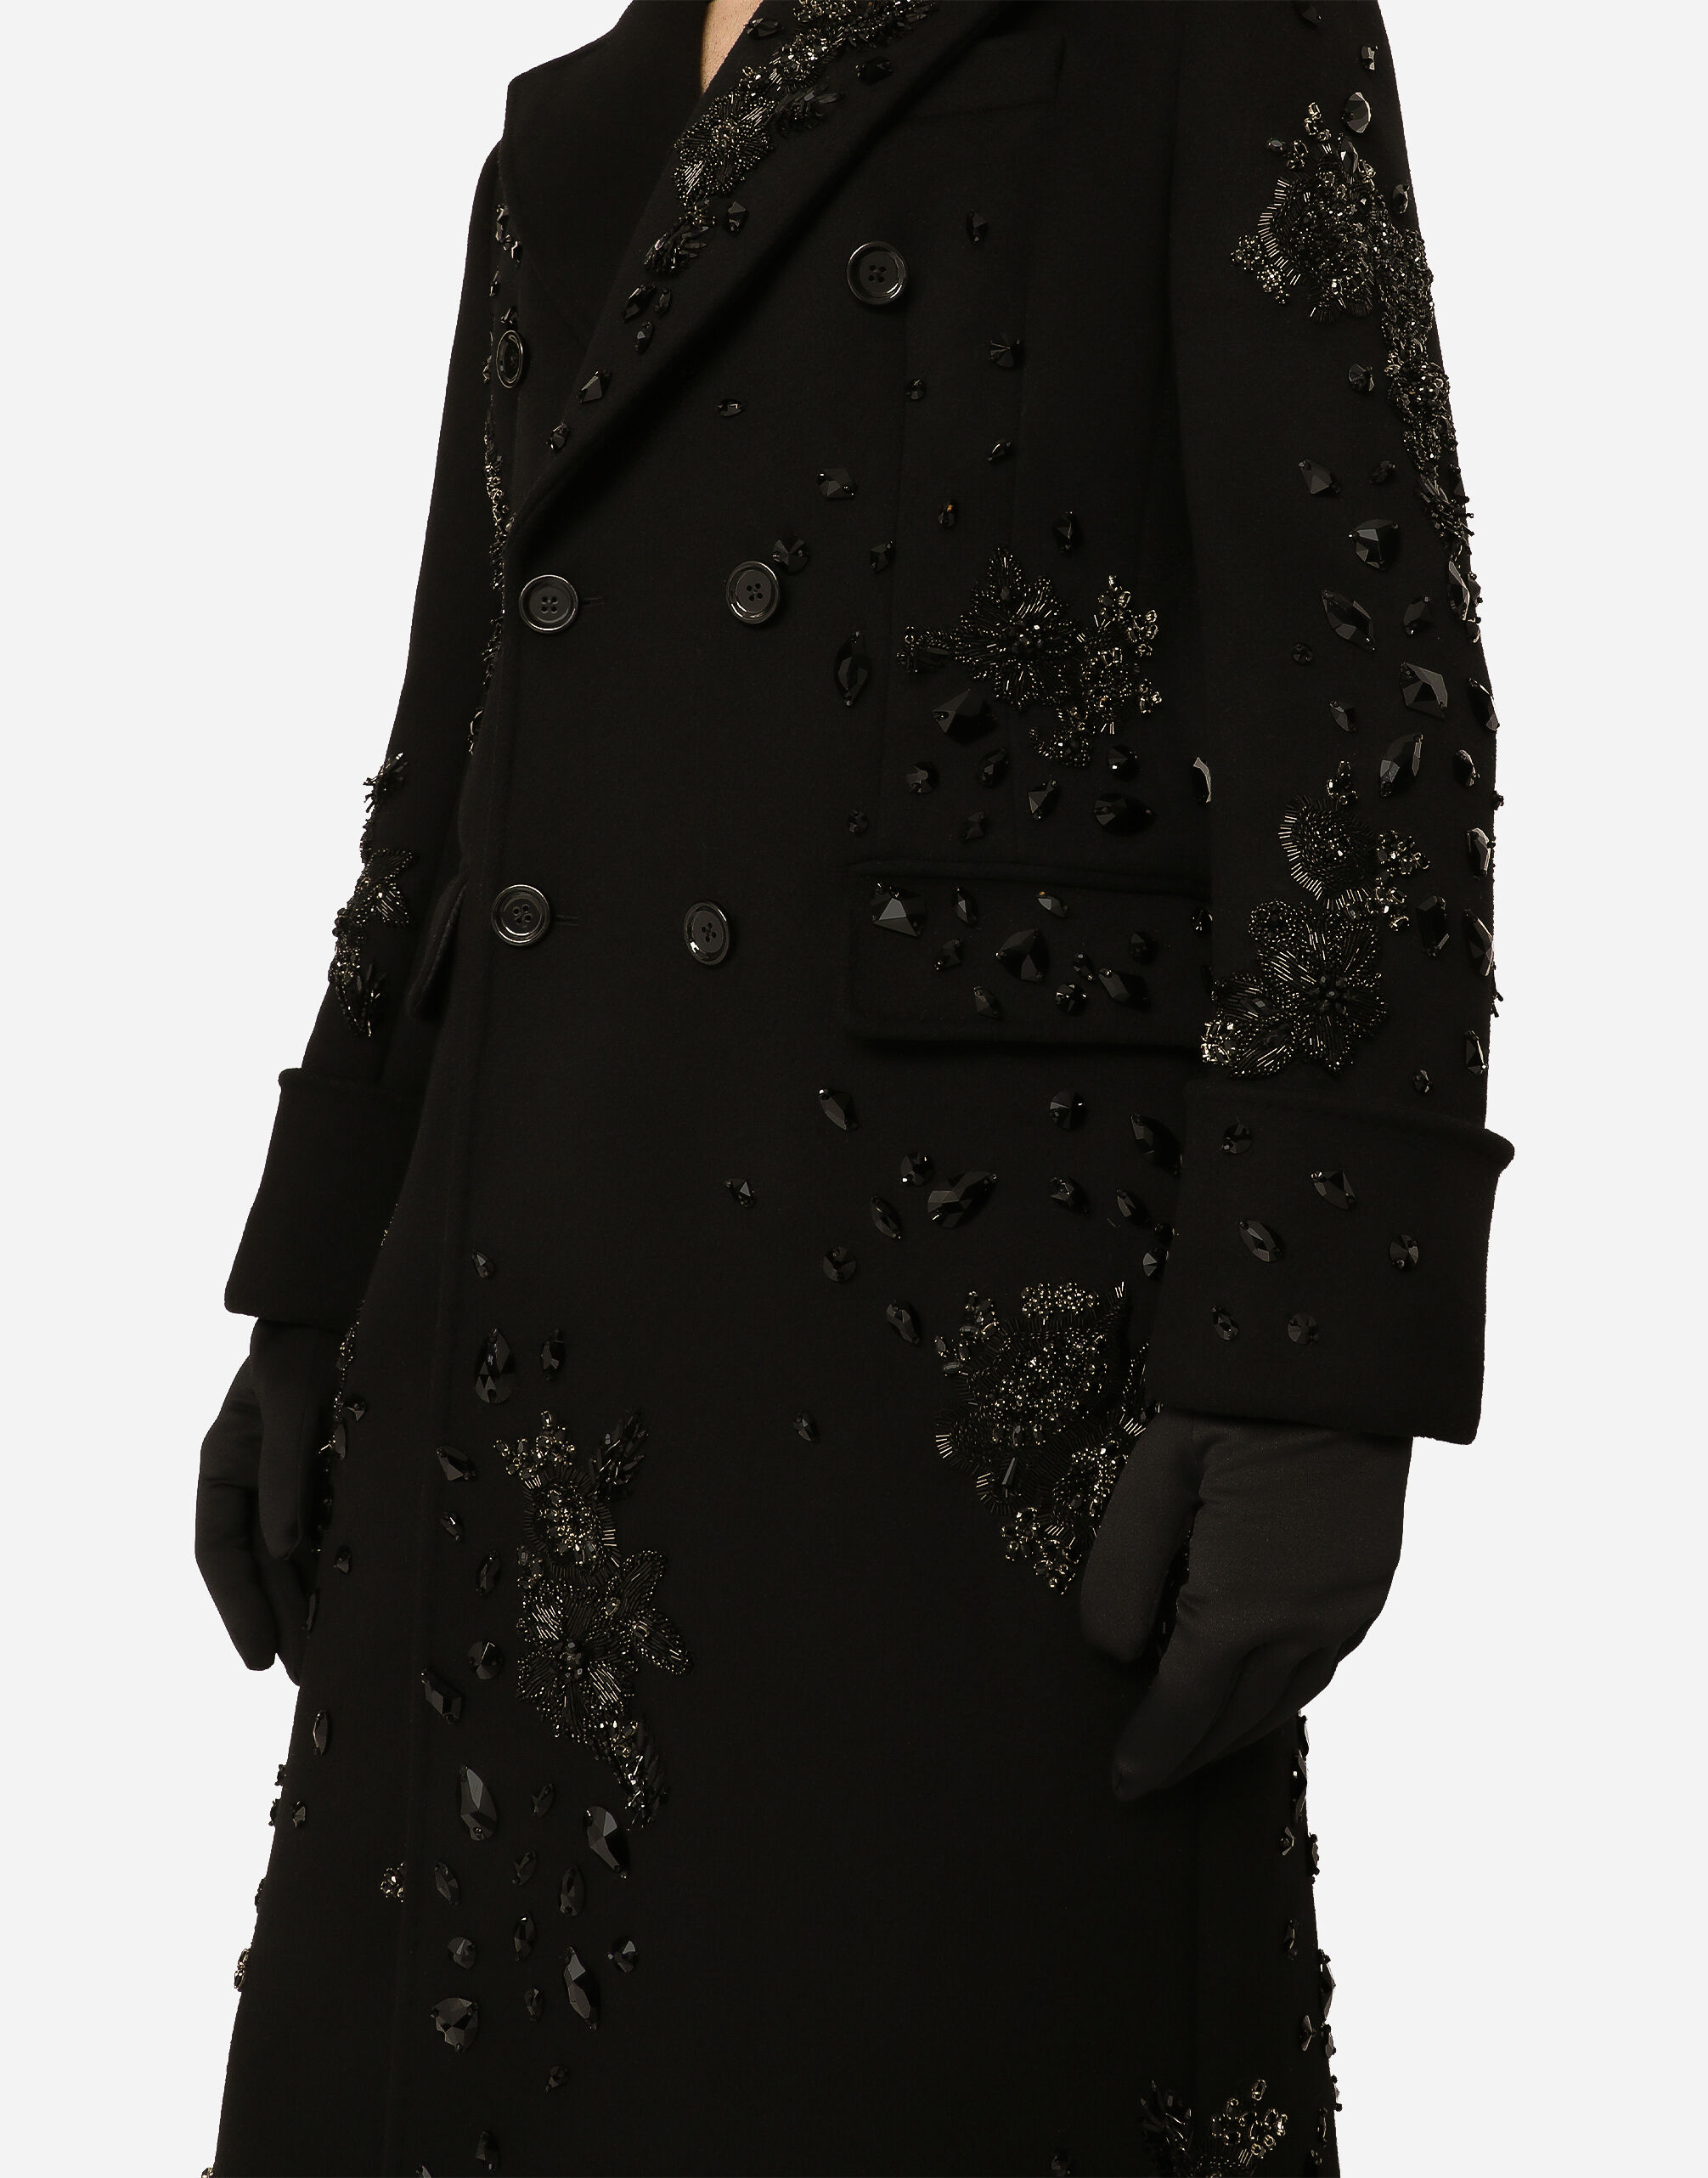 ブラックのメンズ Double-breasted coat with embroidery and stones 